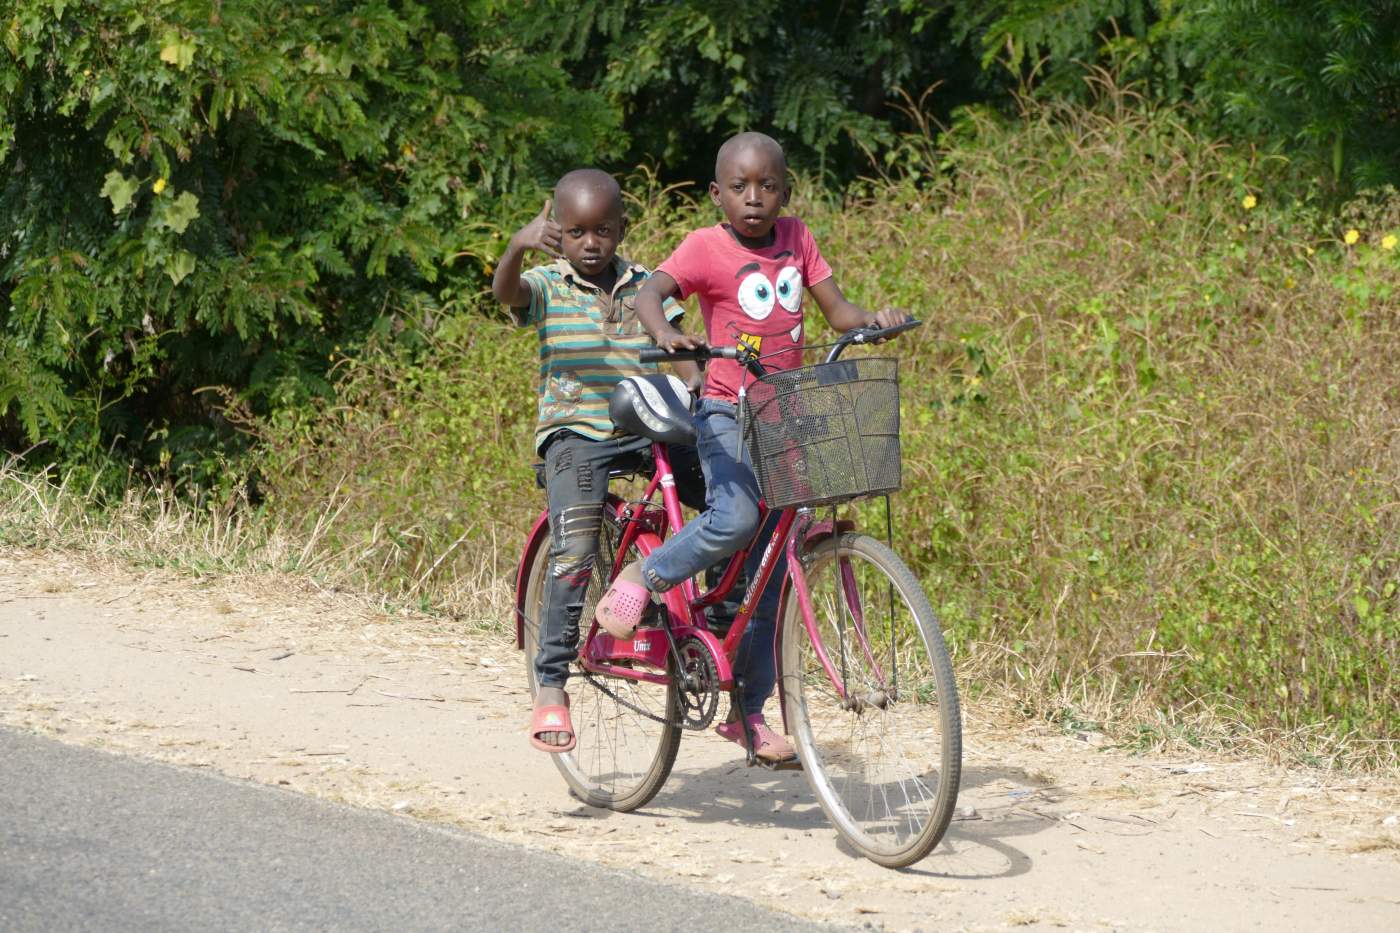 Kinder beim Fahrradfahren auf dem Weg nach Lilongwe zeigen uns und unseren BMWs den Daumen hoch